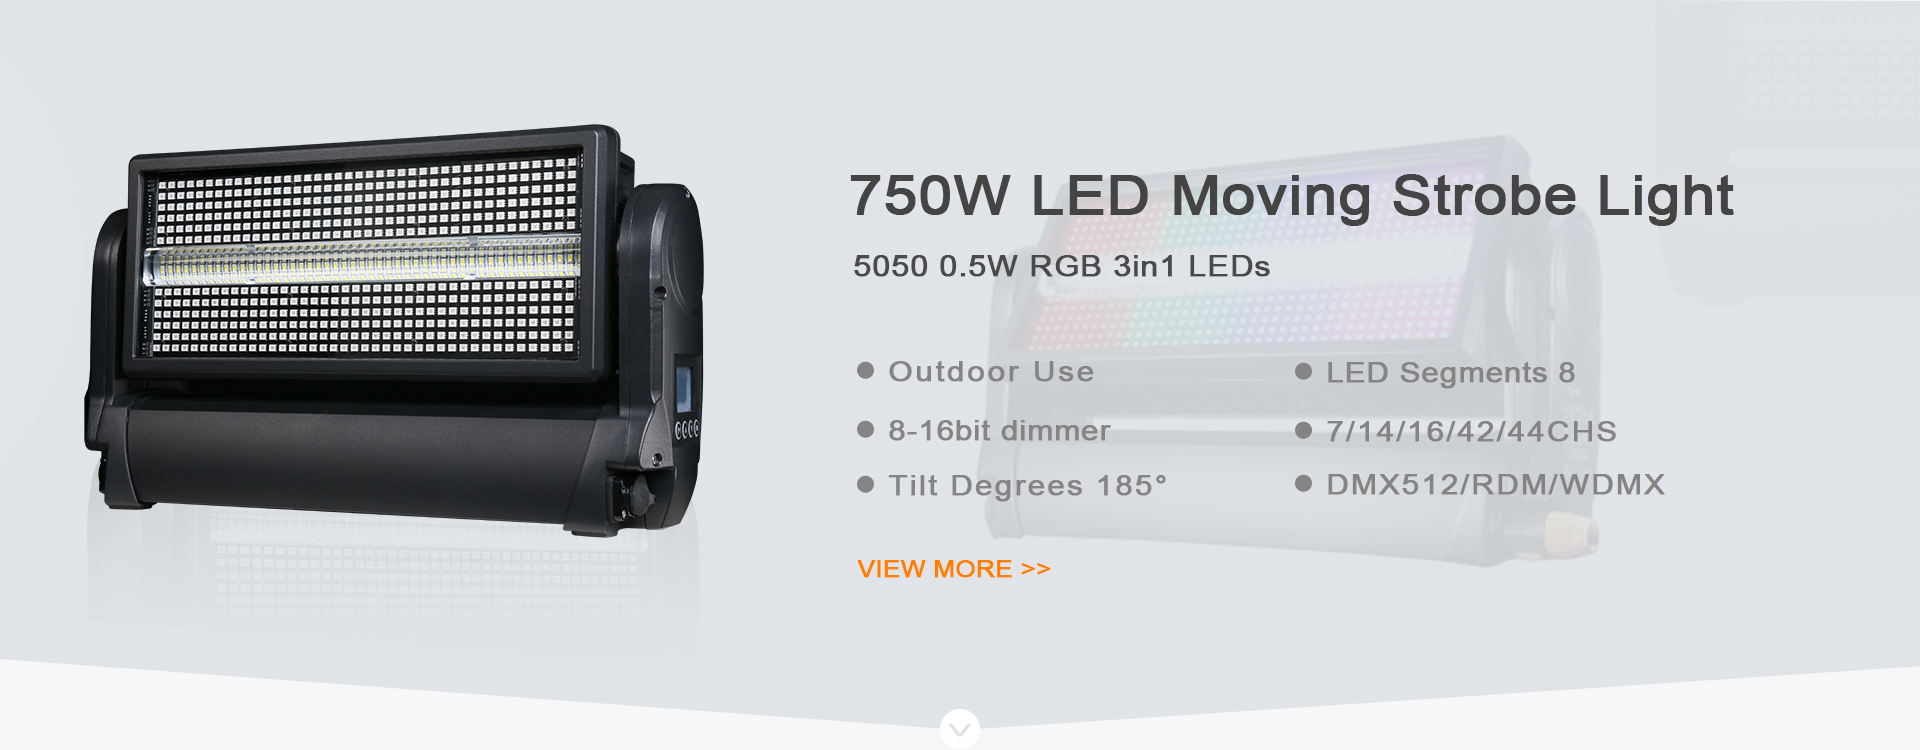 1000W LED Moving Strobe light